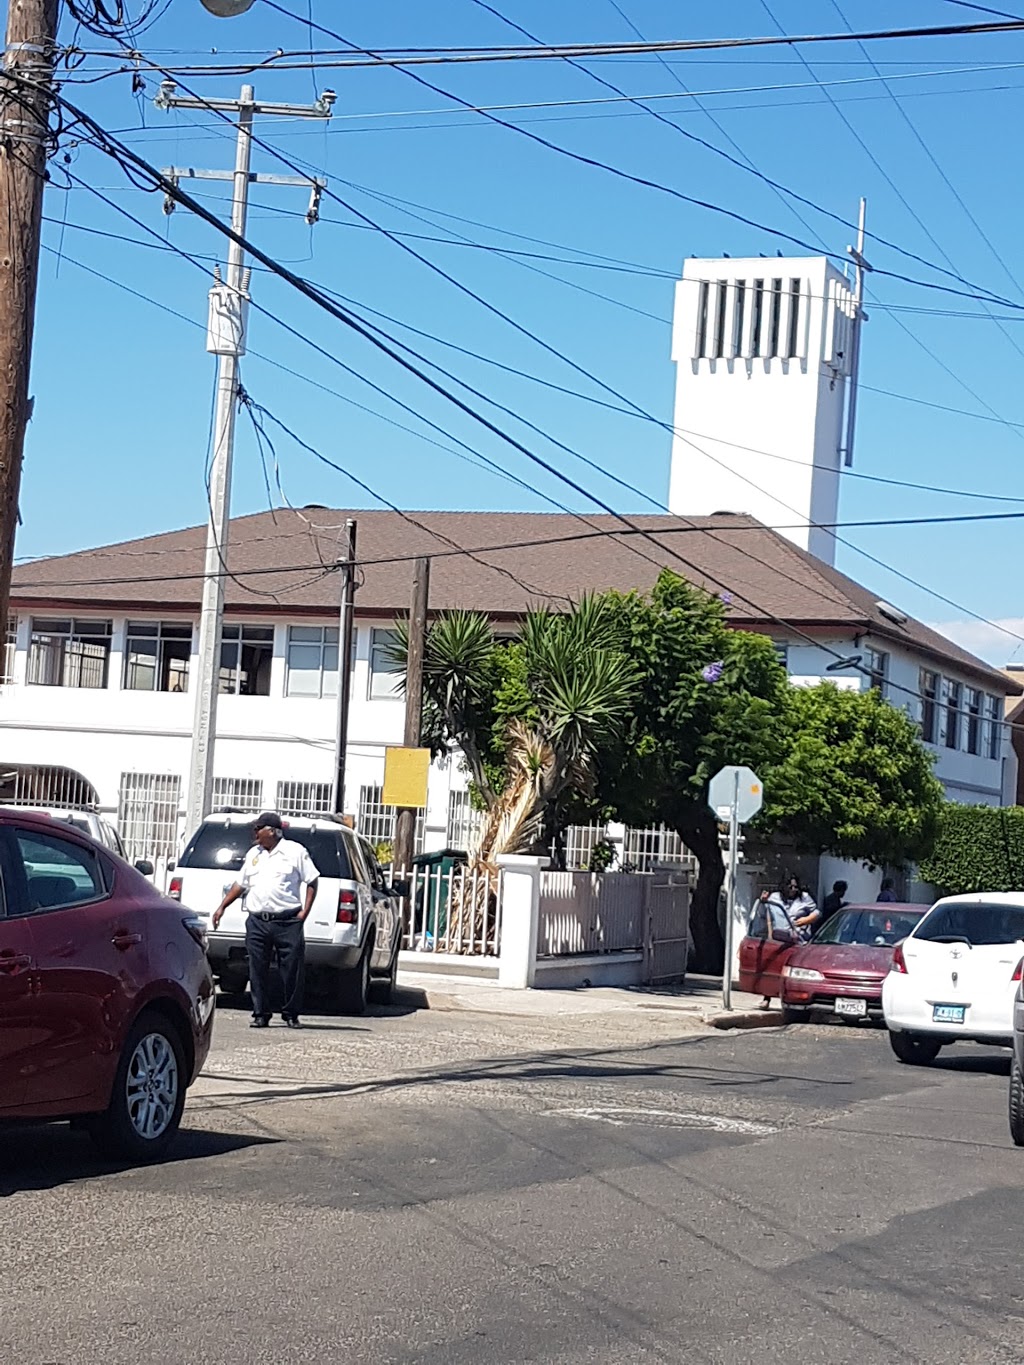 Parroquia San Miguel Arcangel | Avenida de la Luz 4827, Laescondida, 22106 Tijuana, B.C., Mexico | Phone: 664 681 1901